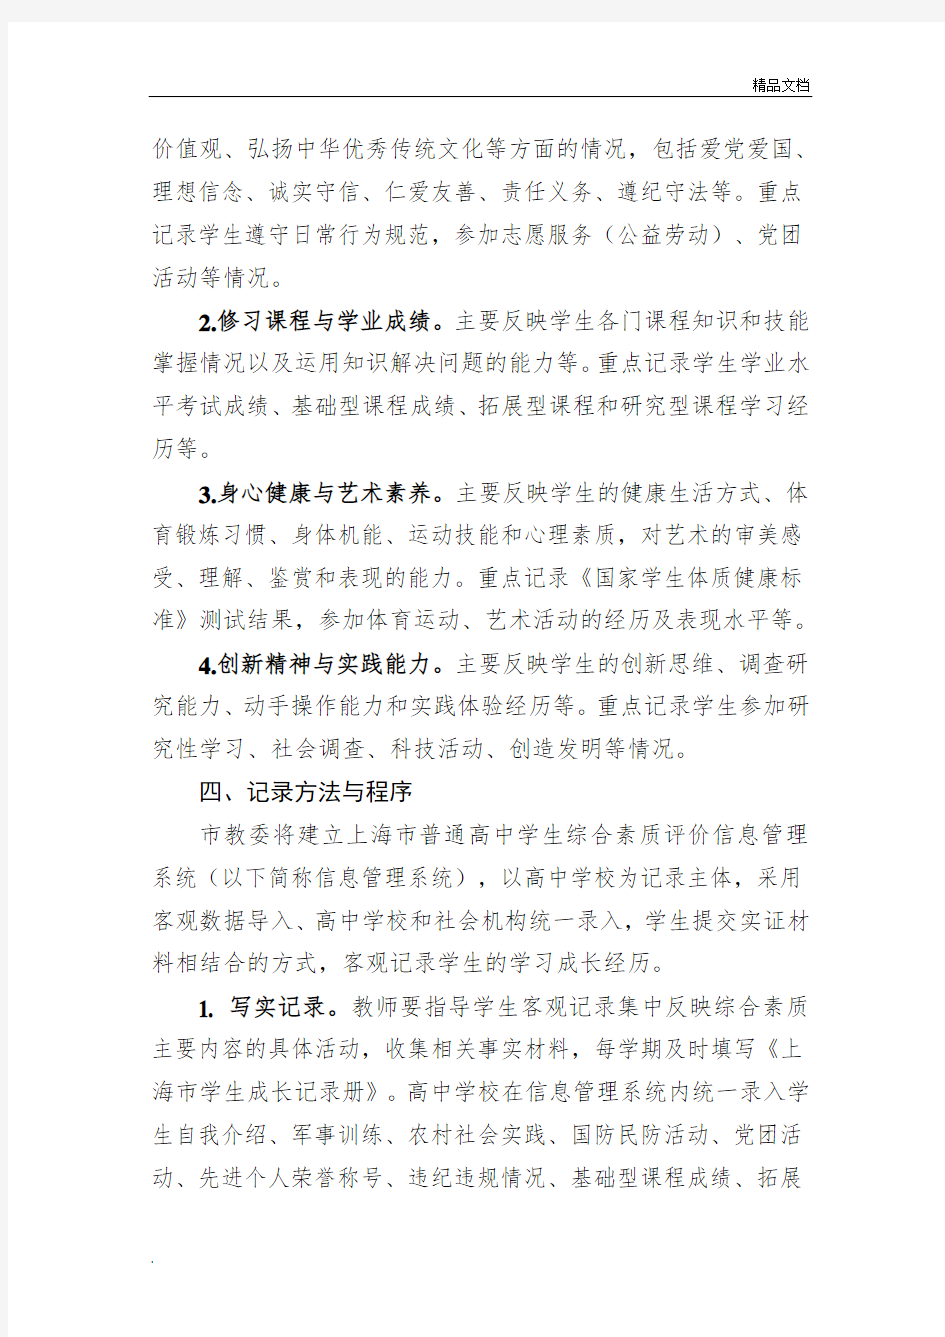 高一年级实施上海市普通高中学生综合素质评价实施办法(征求意见稿)